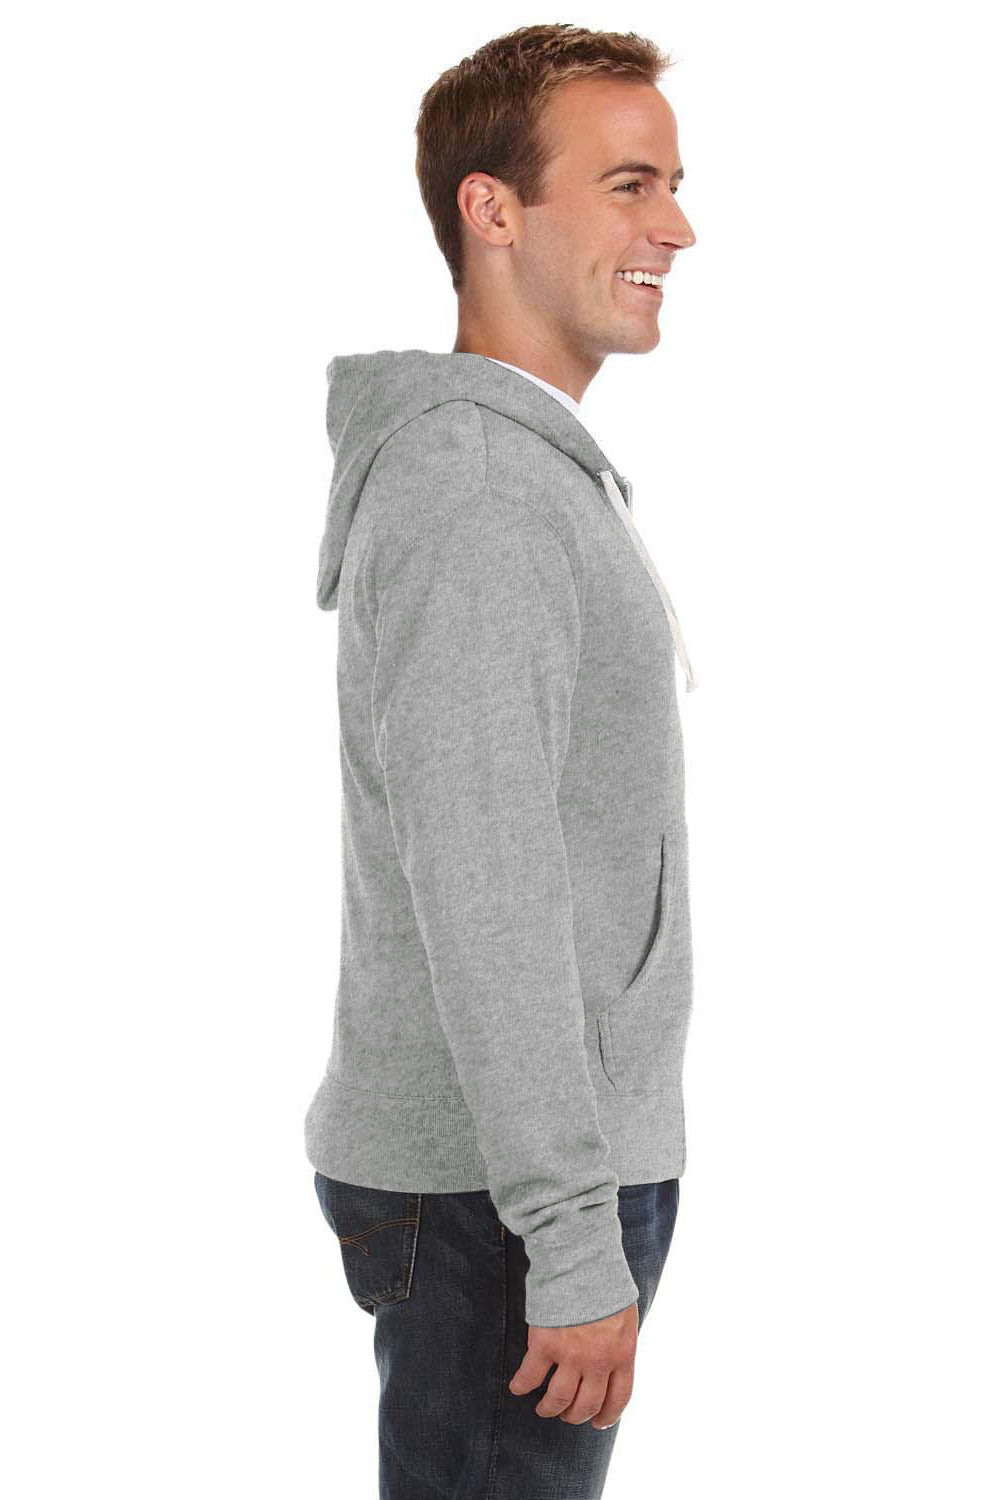 J America JA8872 Mens Fleece Full Zip Hooded Sweatshirt Hoodie Grey Side